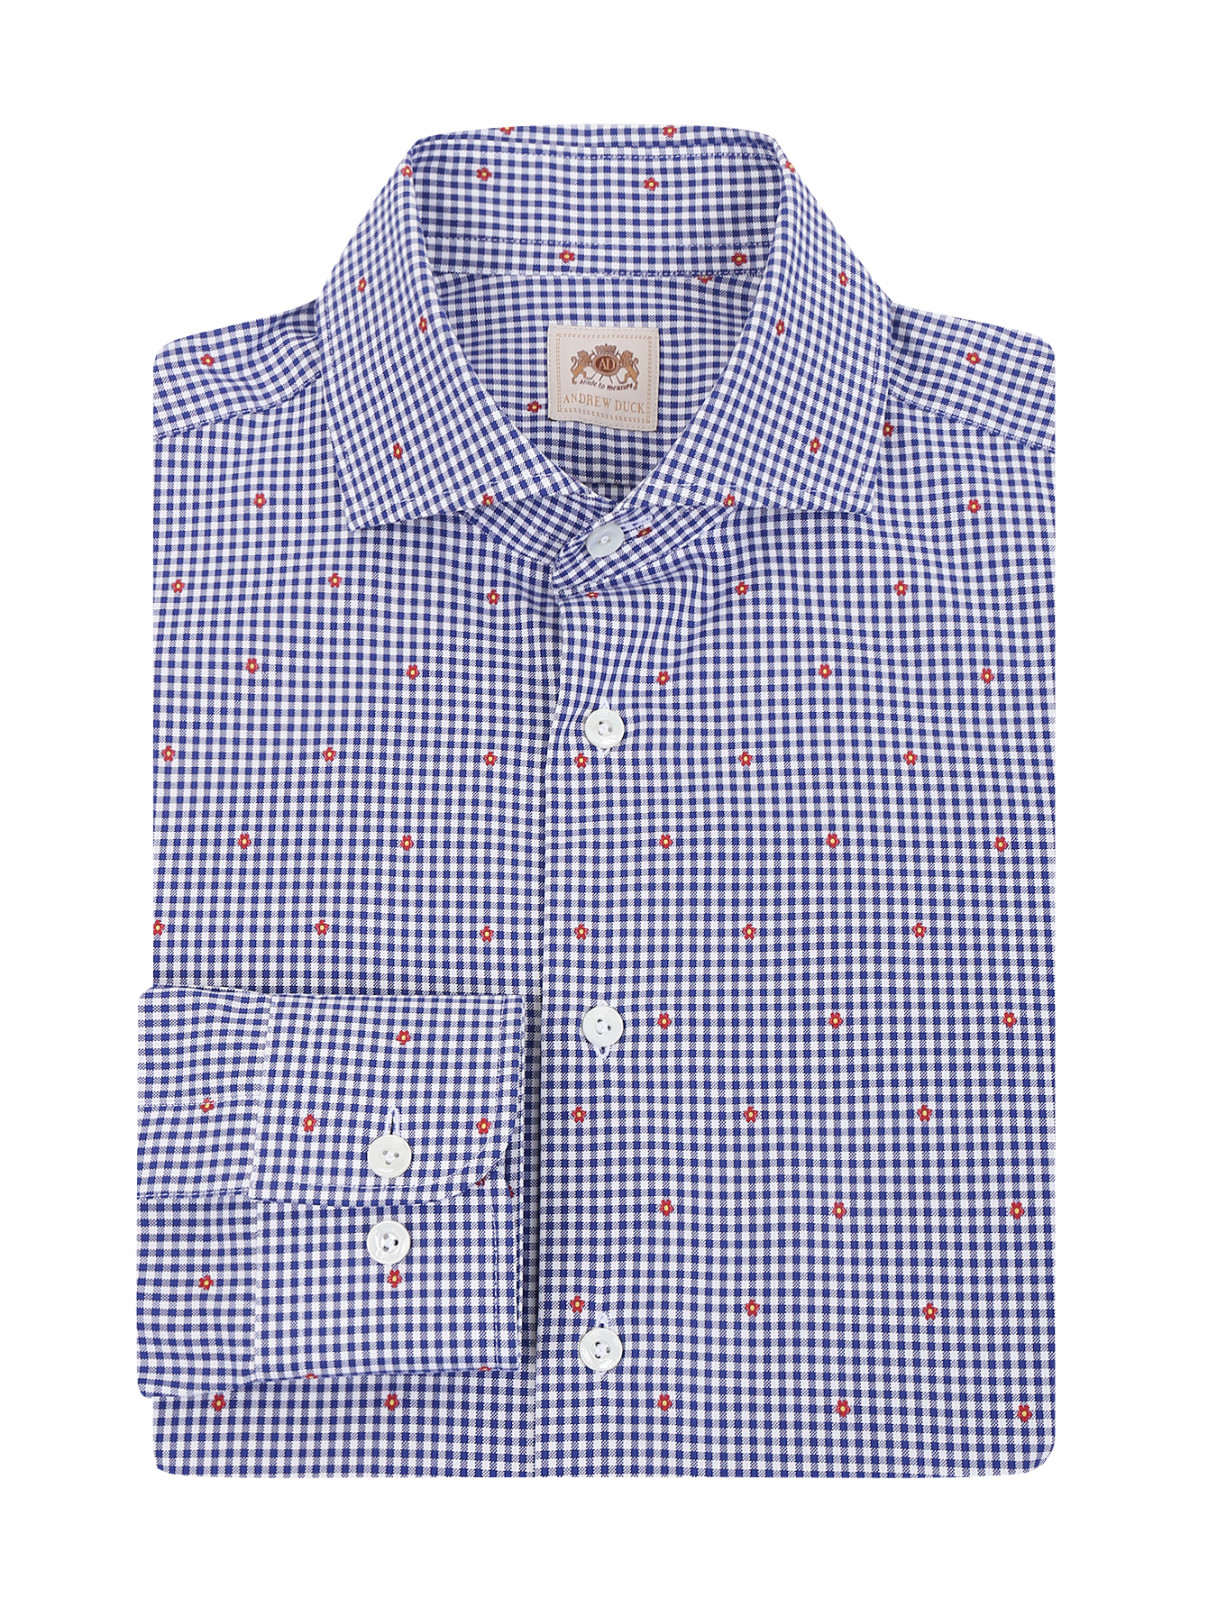 Рубашка из хлопка с узором Andrew Duck  –  Общий вид  – Цвет:  Синий